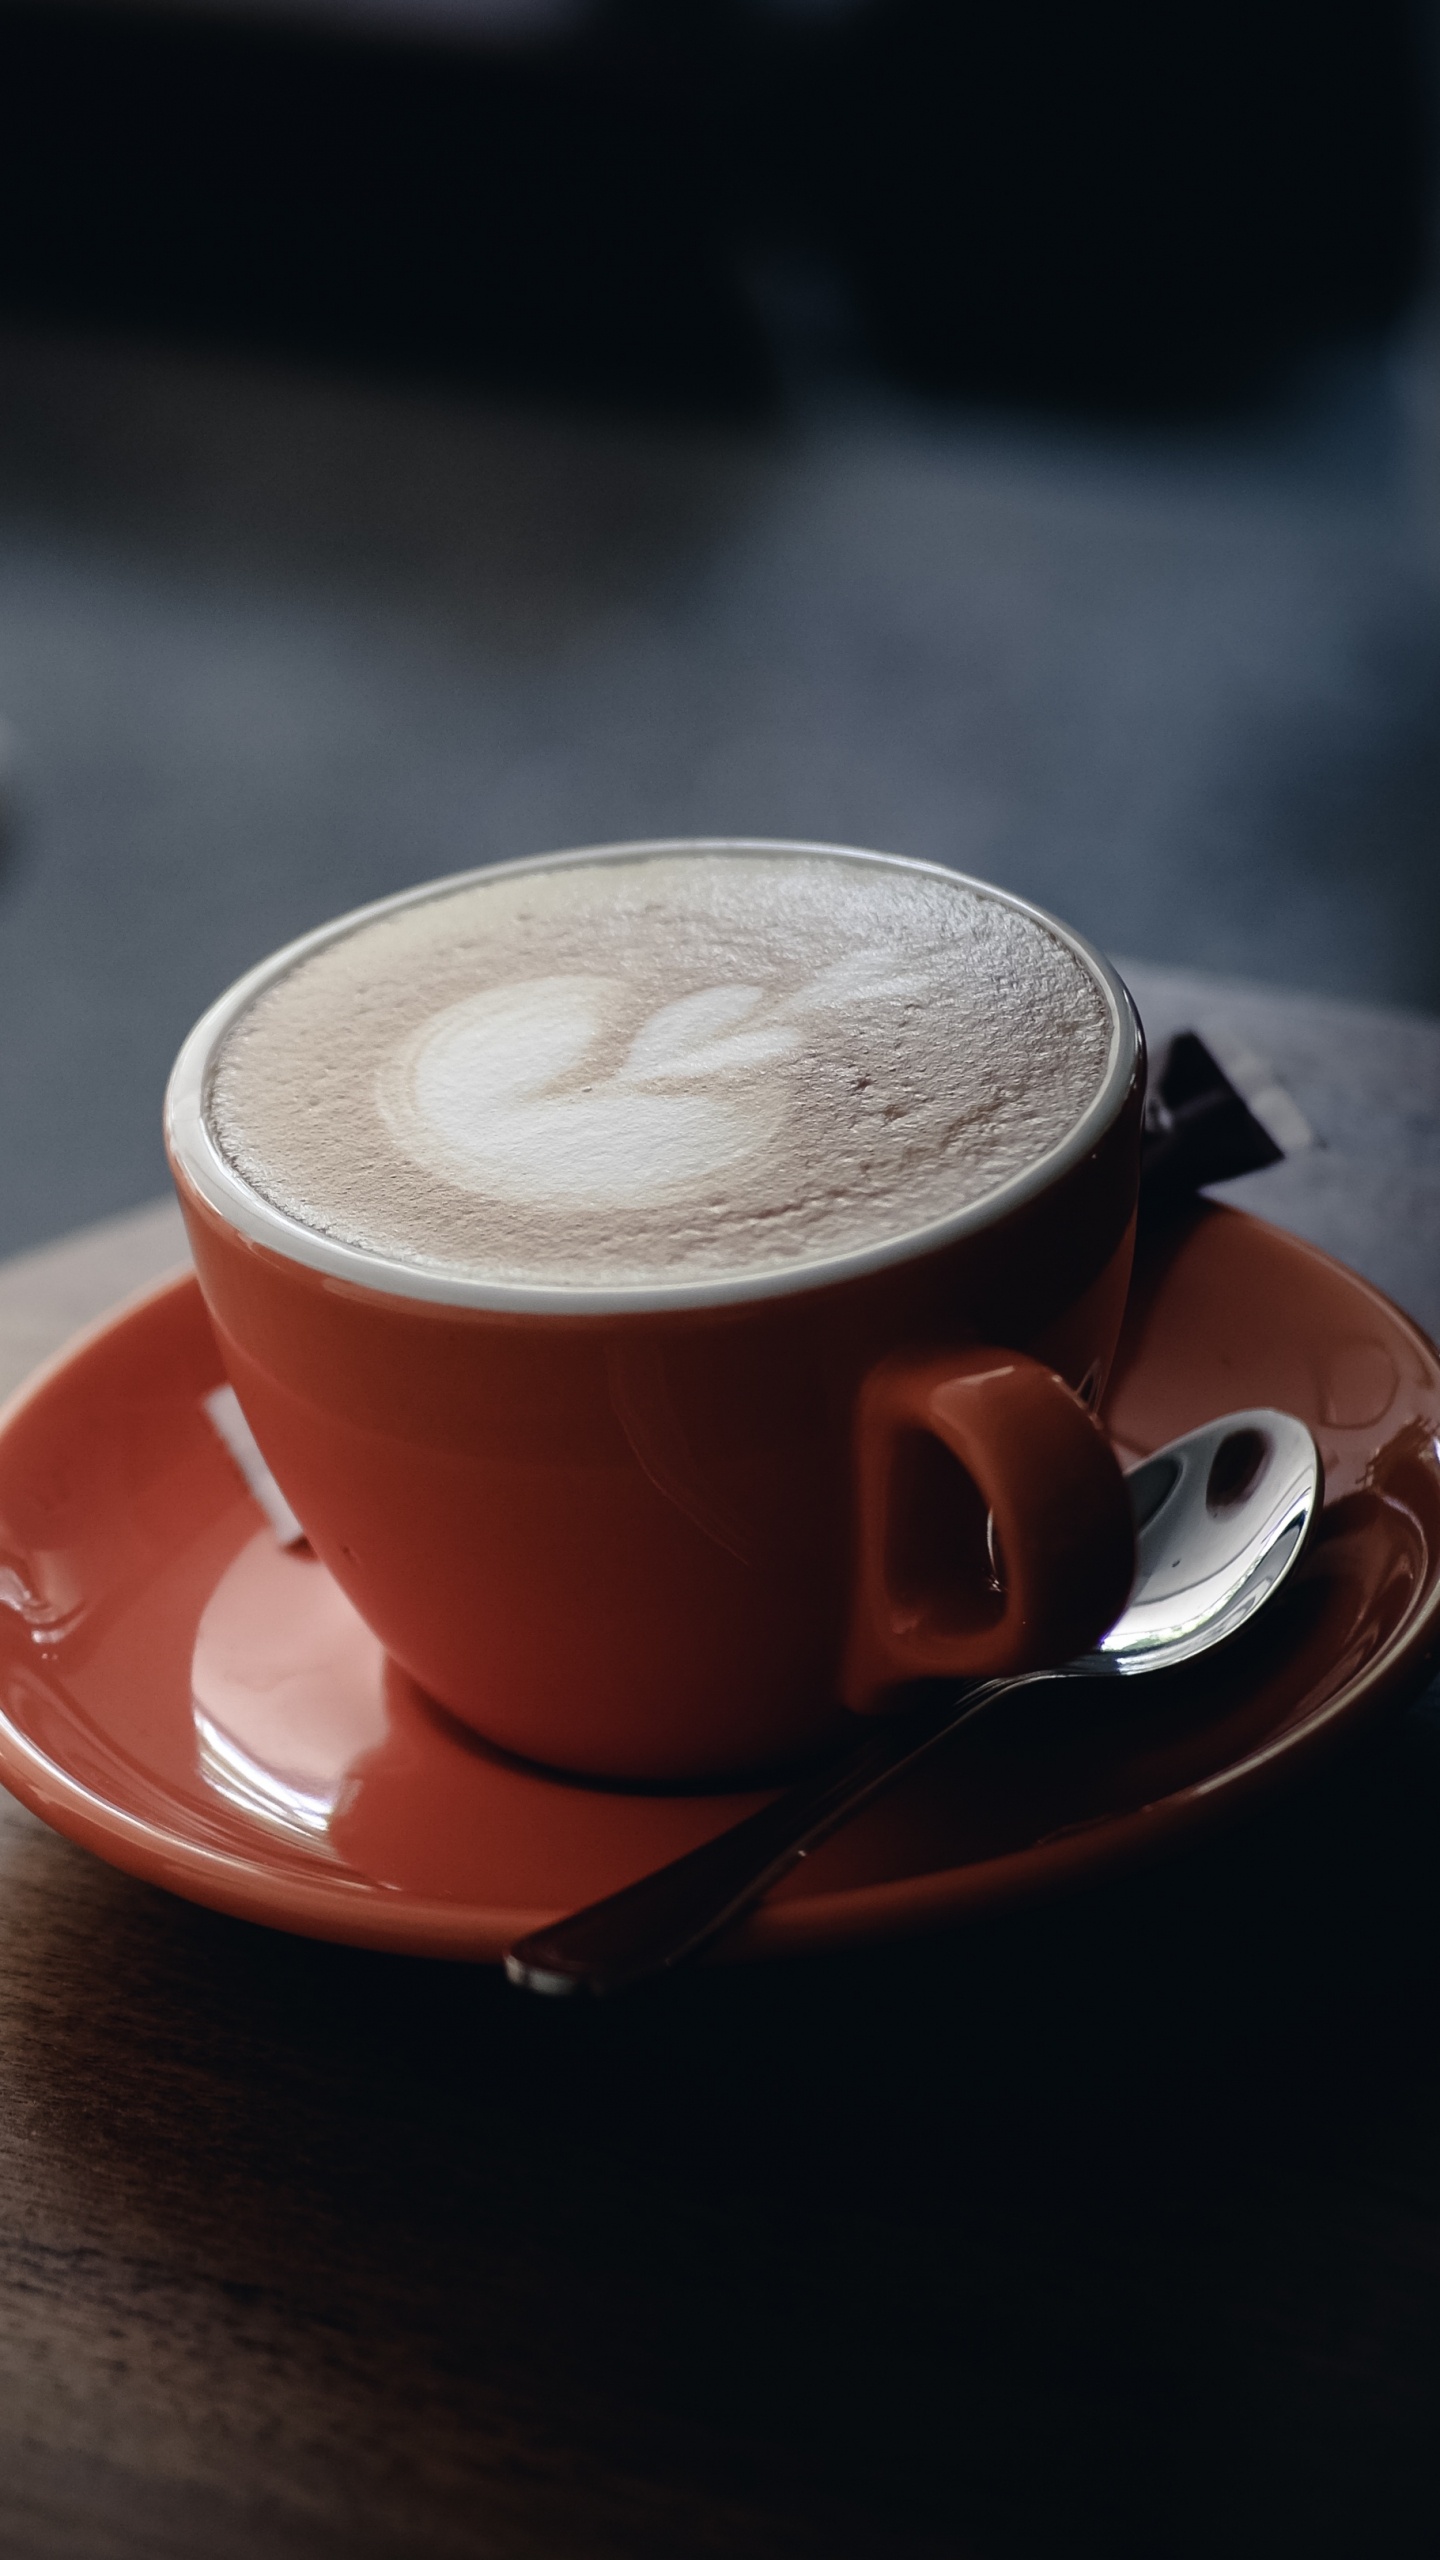 卡布奇诺咖啡, 拿铁艺术, 咖啡杯, 拿铁咖啡, Caff玛奇雅朵咖啡 壁纸 1440x2560 允许